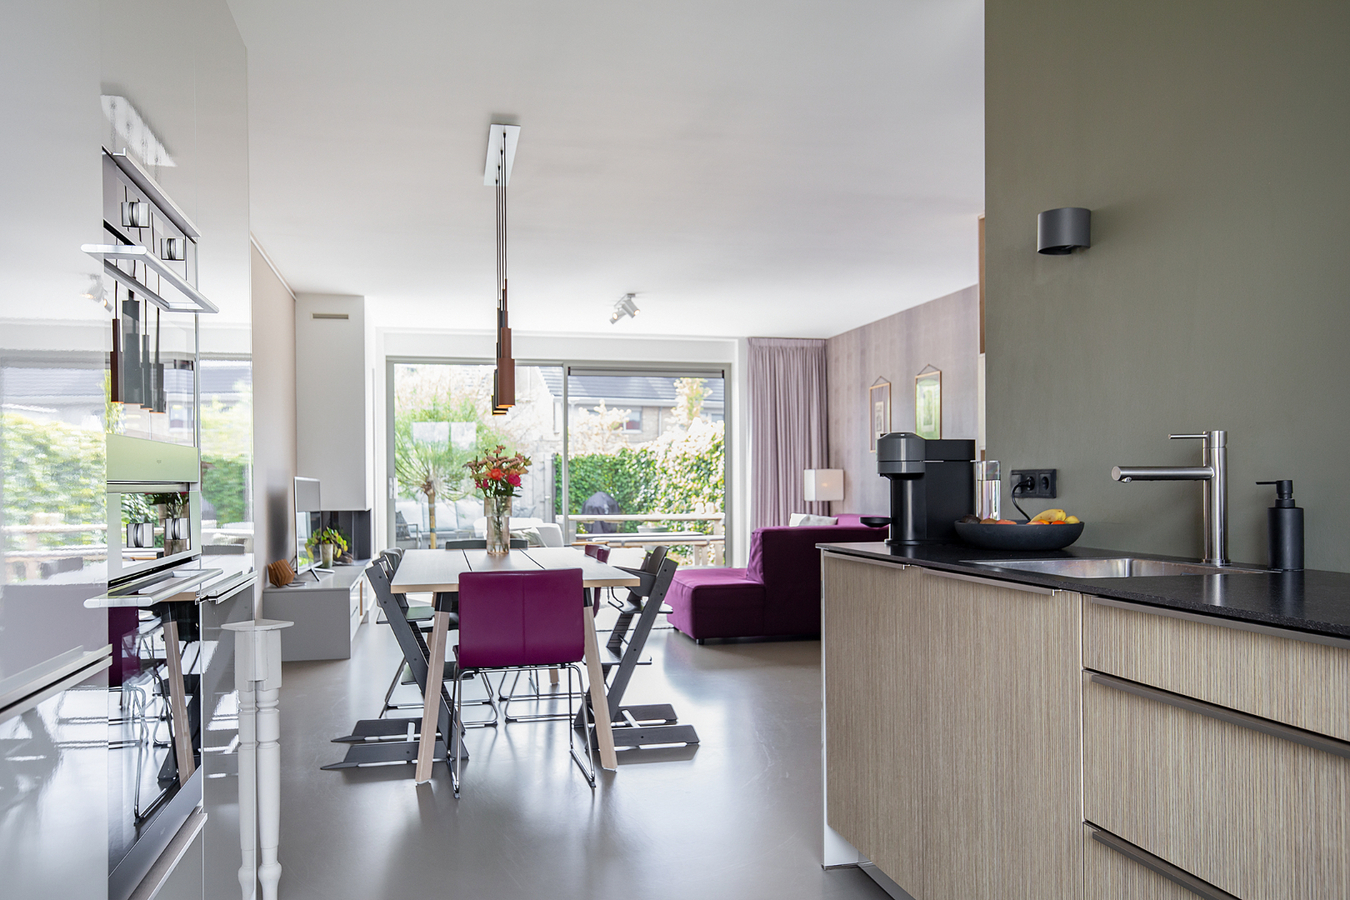 Geweldige energiezuinige en afgewerkte 5-kamer tussenwoning met luxe keuken, badkamer, ruime living en royale tuin! 